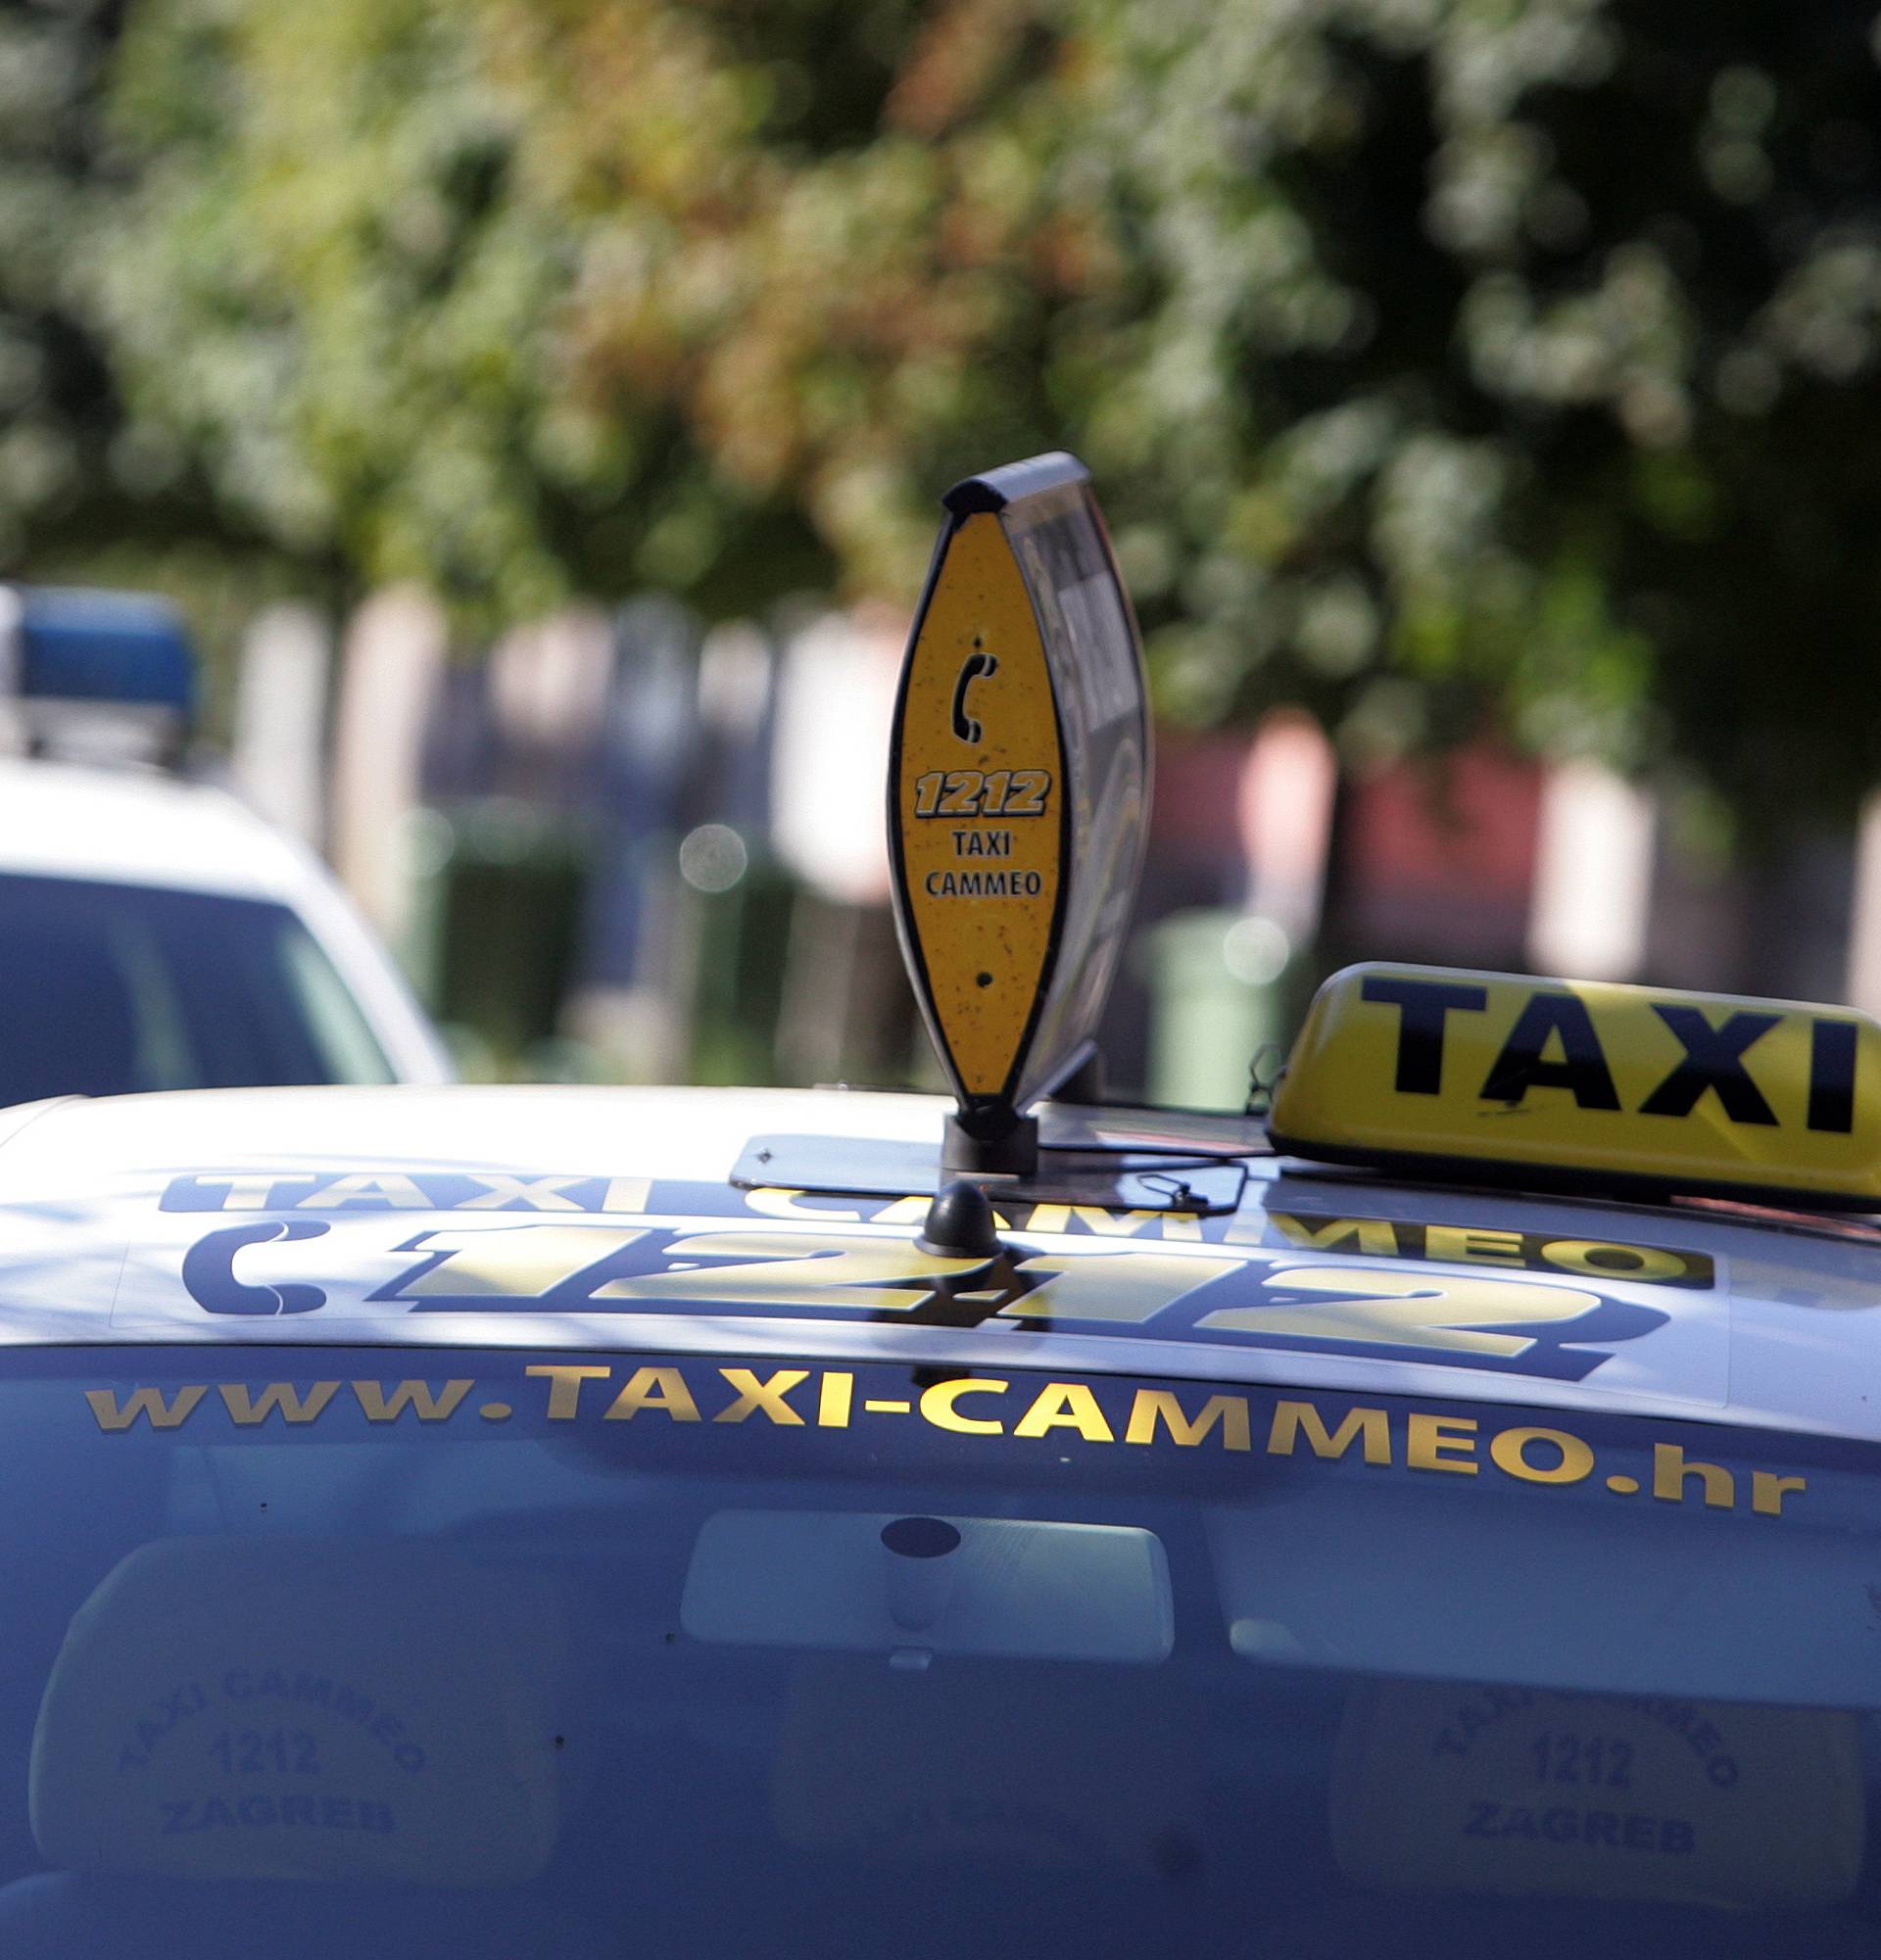 Taksista pretukli zbog 9 kuna? 'Zgroženi smo ovim napadom'